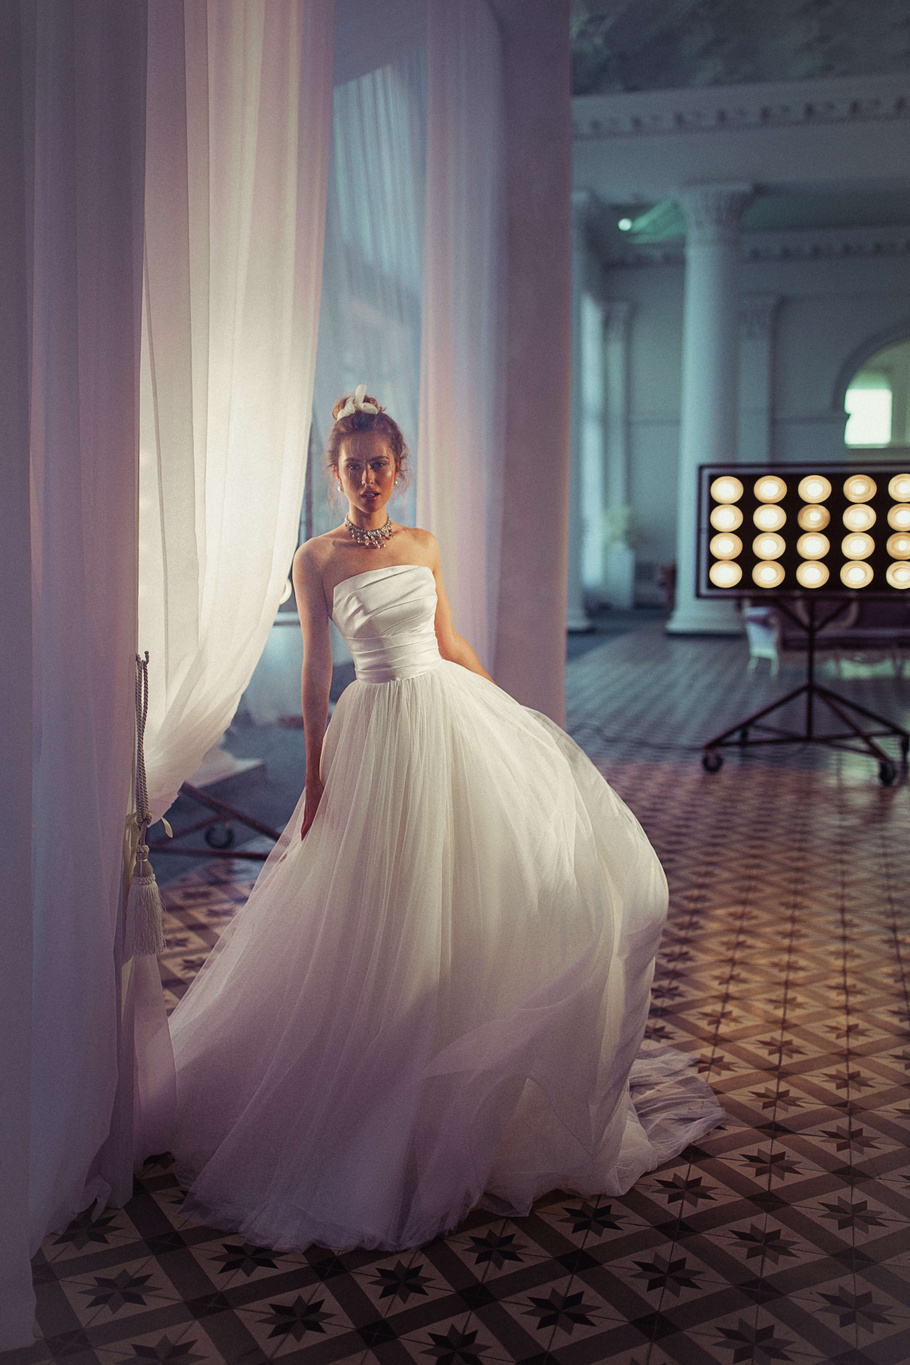 Купить свадебное платье «Тициана» Бламмо Биамо из коллекции Свит Лайф 2021 года в Екатеринбурге